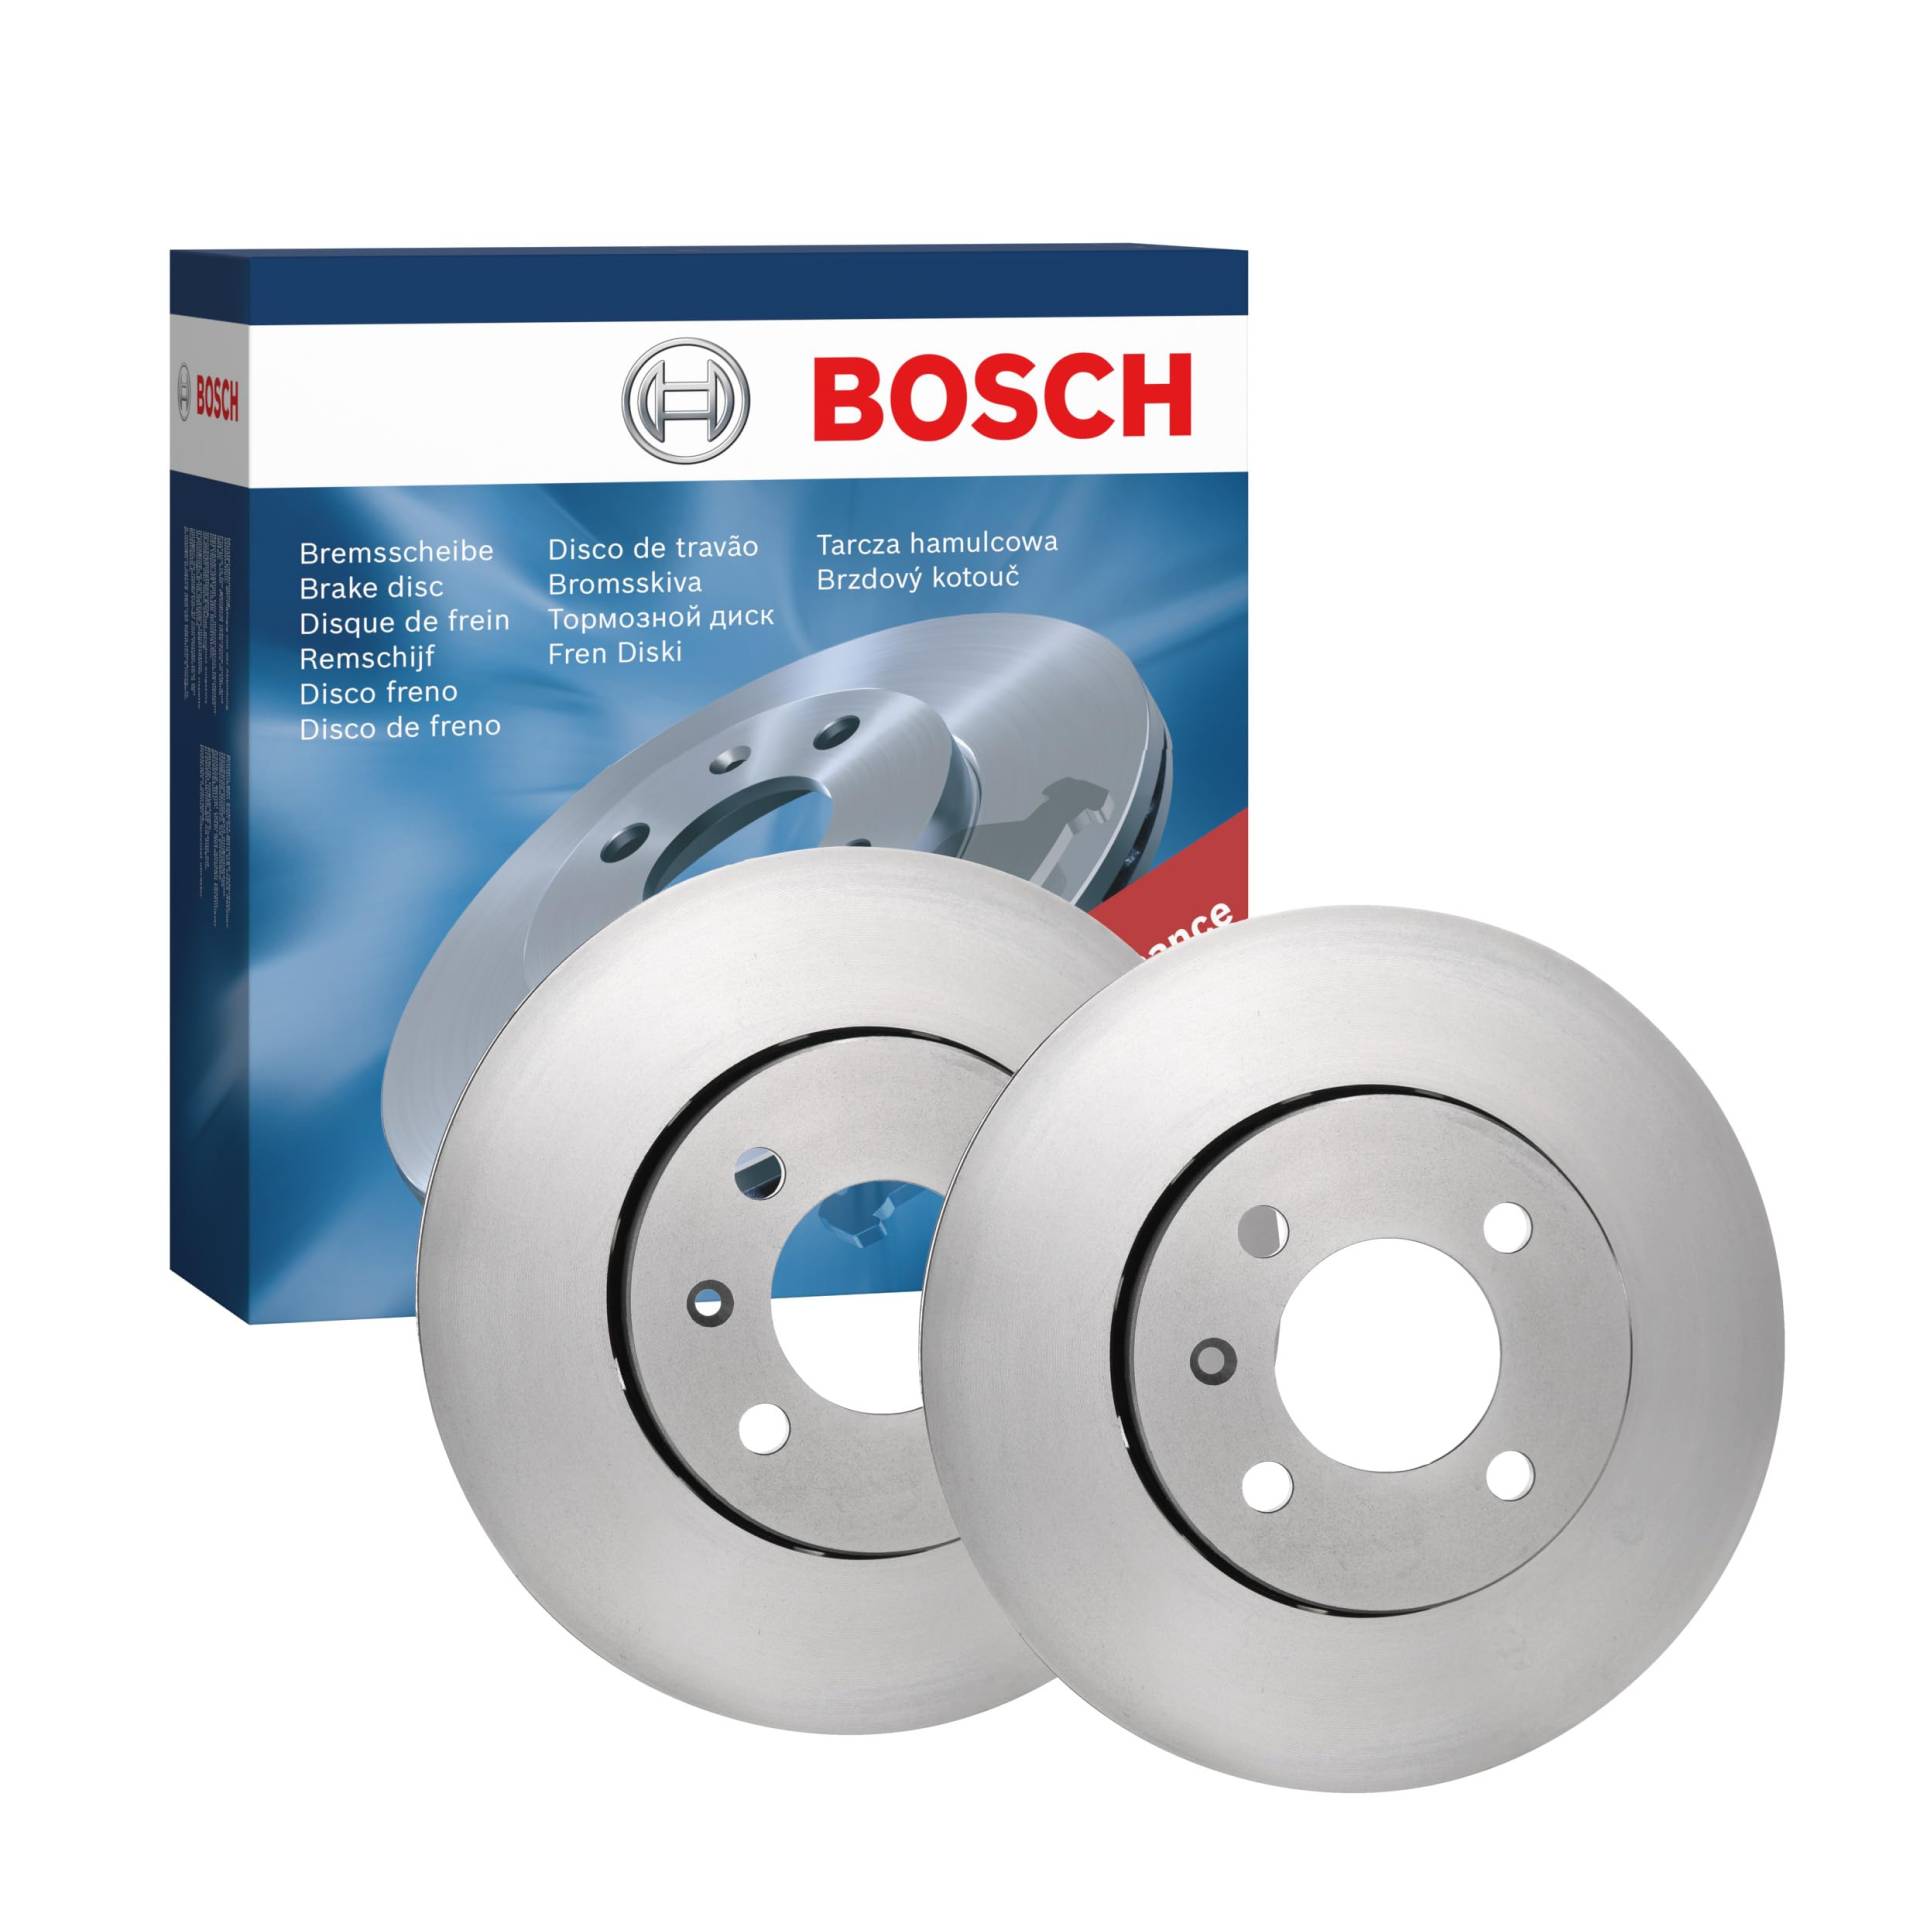 Bosch BD1606 Bremsscheiben - Vorderachse - ECE-R90 Zertifizierung - zwei Bremsscheiben pro Set von Bosch Automotive